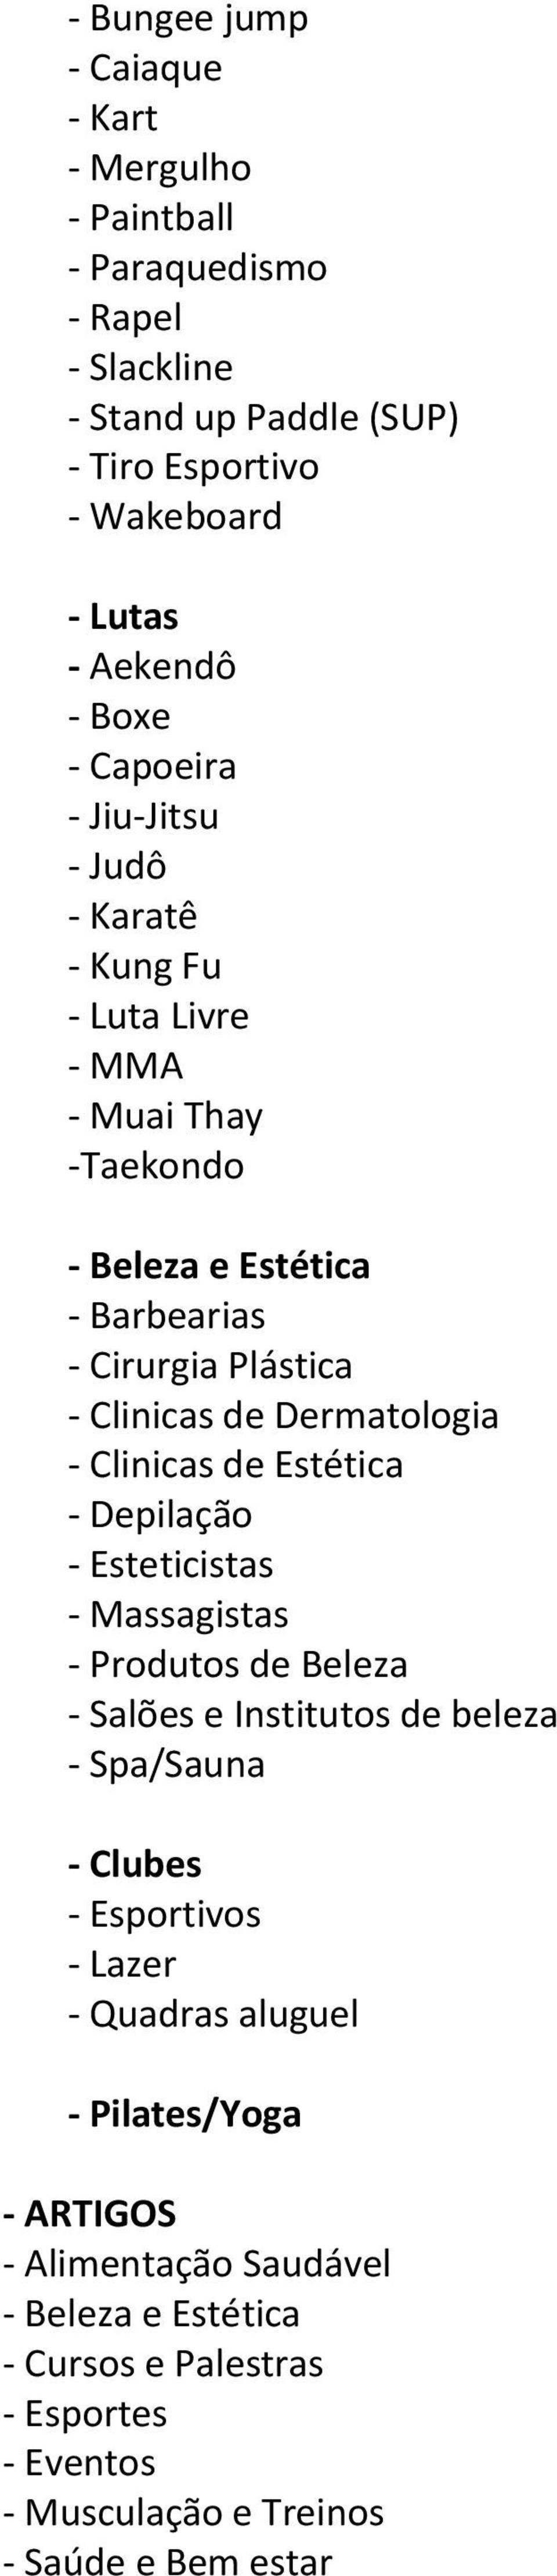 Dermatologia - Clinicas de Estética - Depilação - Esteticistas - Massagistas - Produtos de Beleza - Salões e Institutos de beleza - Spa/Sauna - Clubes - Esportivos -